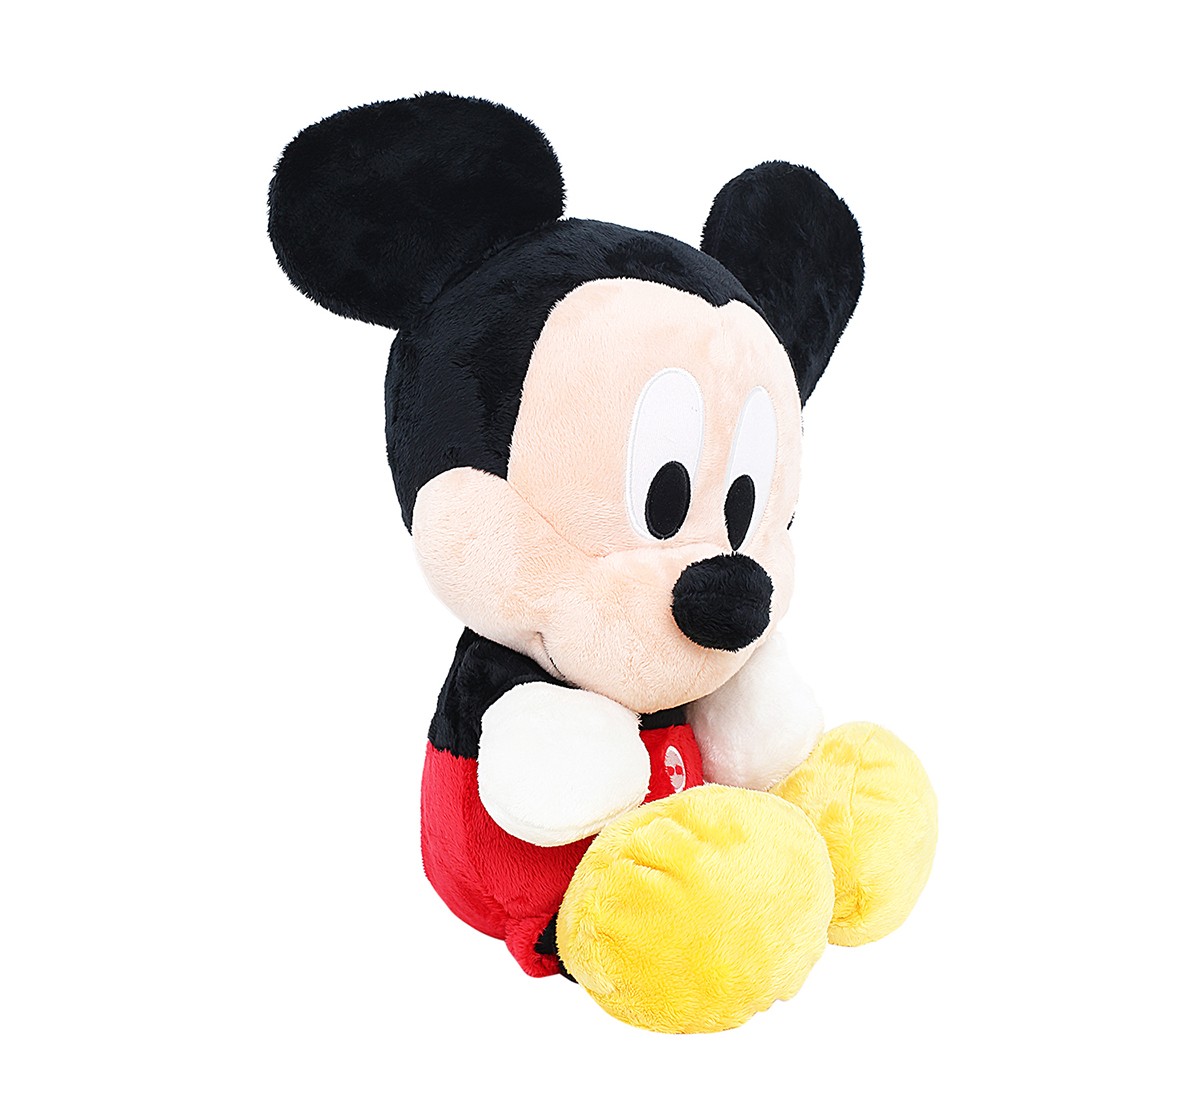 Disney Mickey Floppy Big Head 20 Inch Soft Toy for Kids age 3Y+